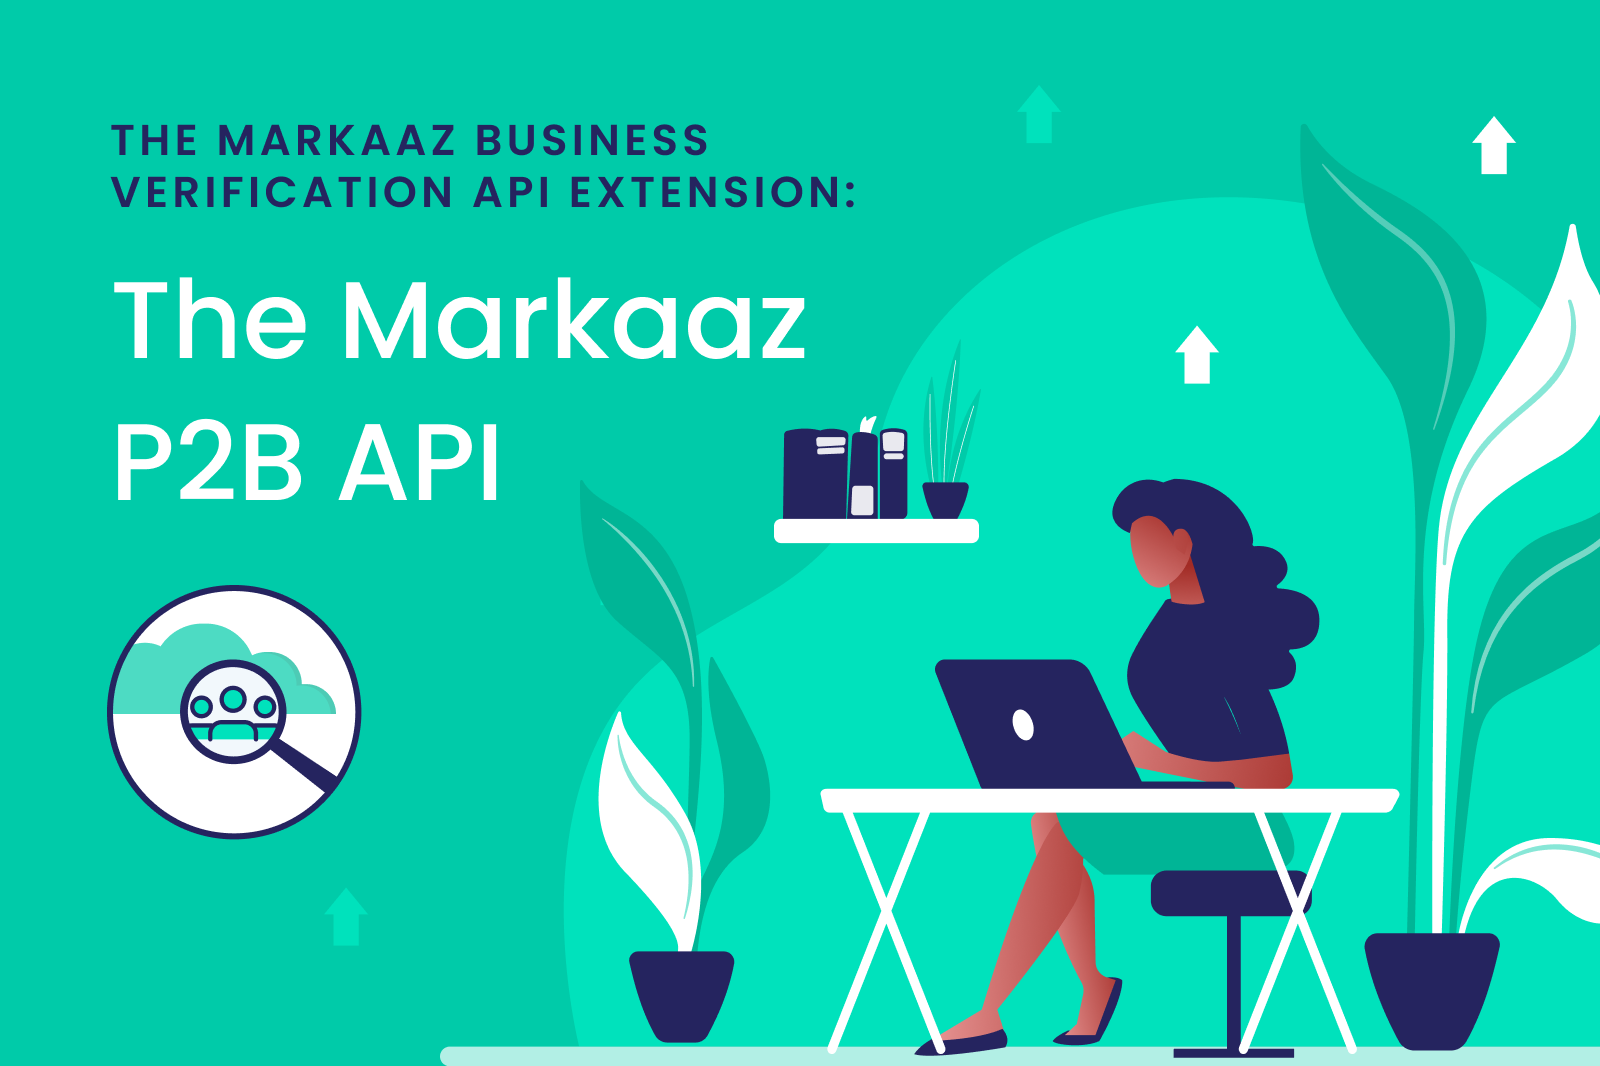 The Markaaz P2B API